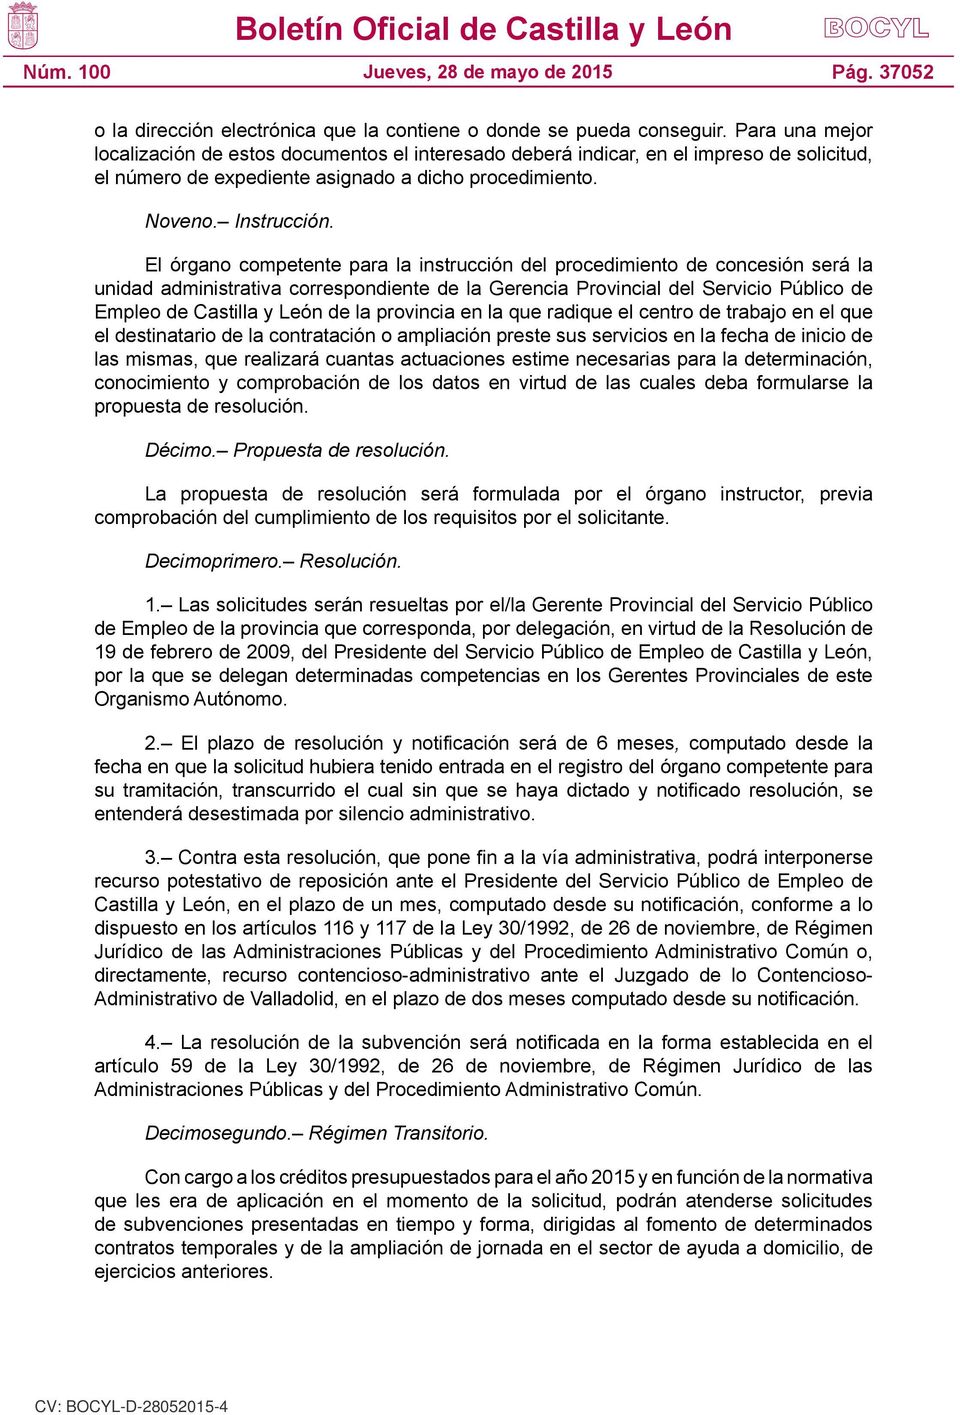 El órgano competente para la instrucción del procedimiento de concesión será la unidad administrativa correspondiente de la Gerencia Provincial del Servicio Público de Empleo de Castilla y León de la